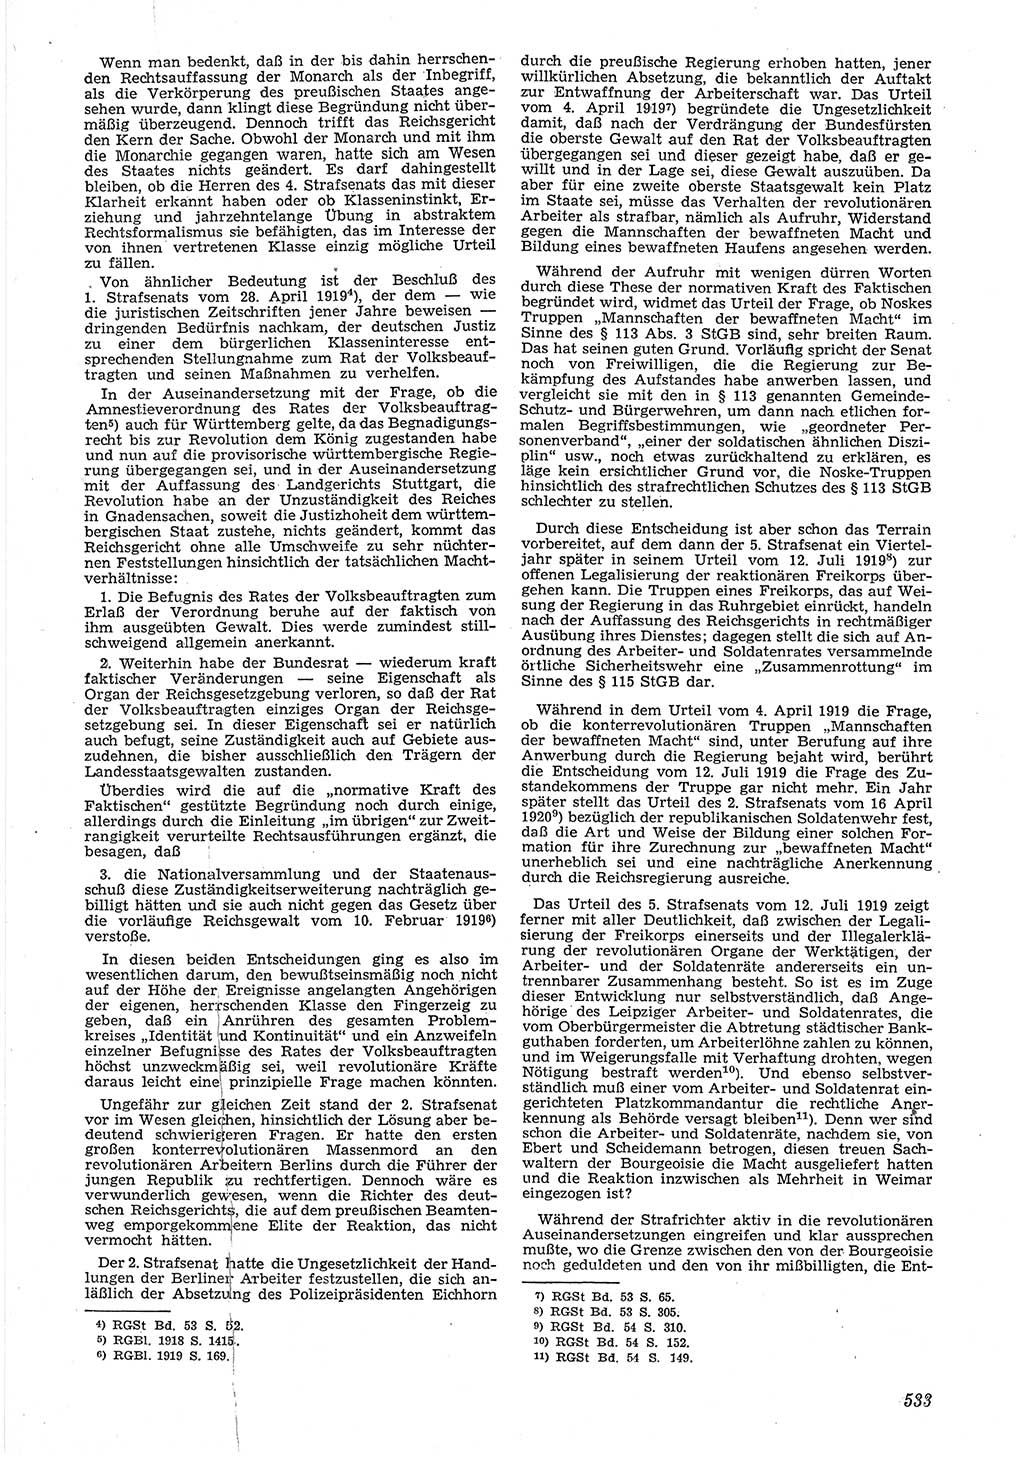 Neue Justiz (NJ), Zeitschrift für Recht und Rechtswissenschaft [Deutsche Demokratische Republik (DDR)], 6. Jahrgang 1952, Seite 533 (NJ DDR 1952, S. 533)